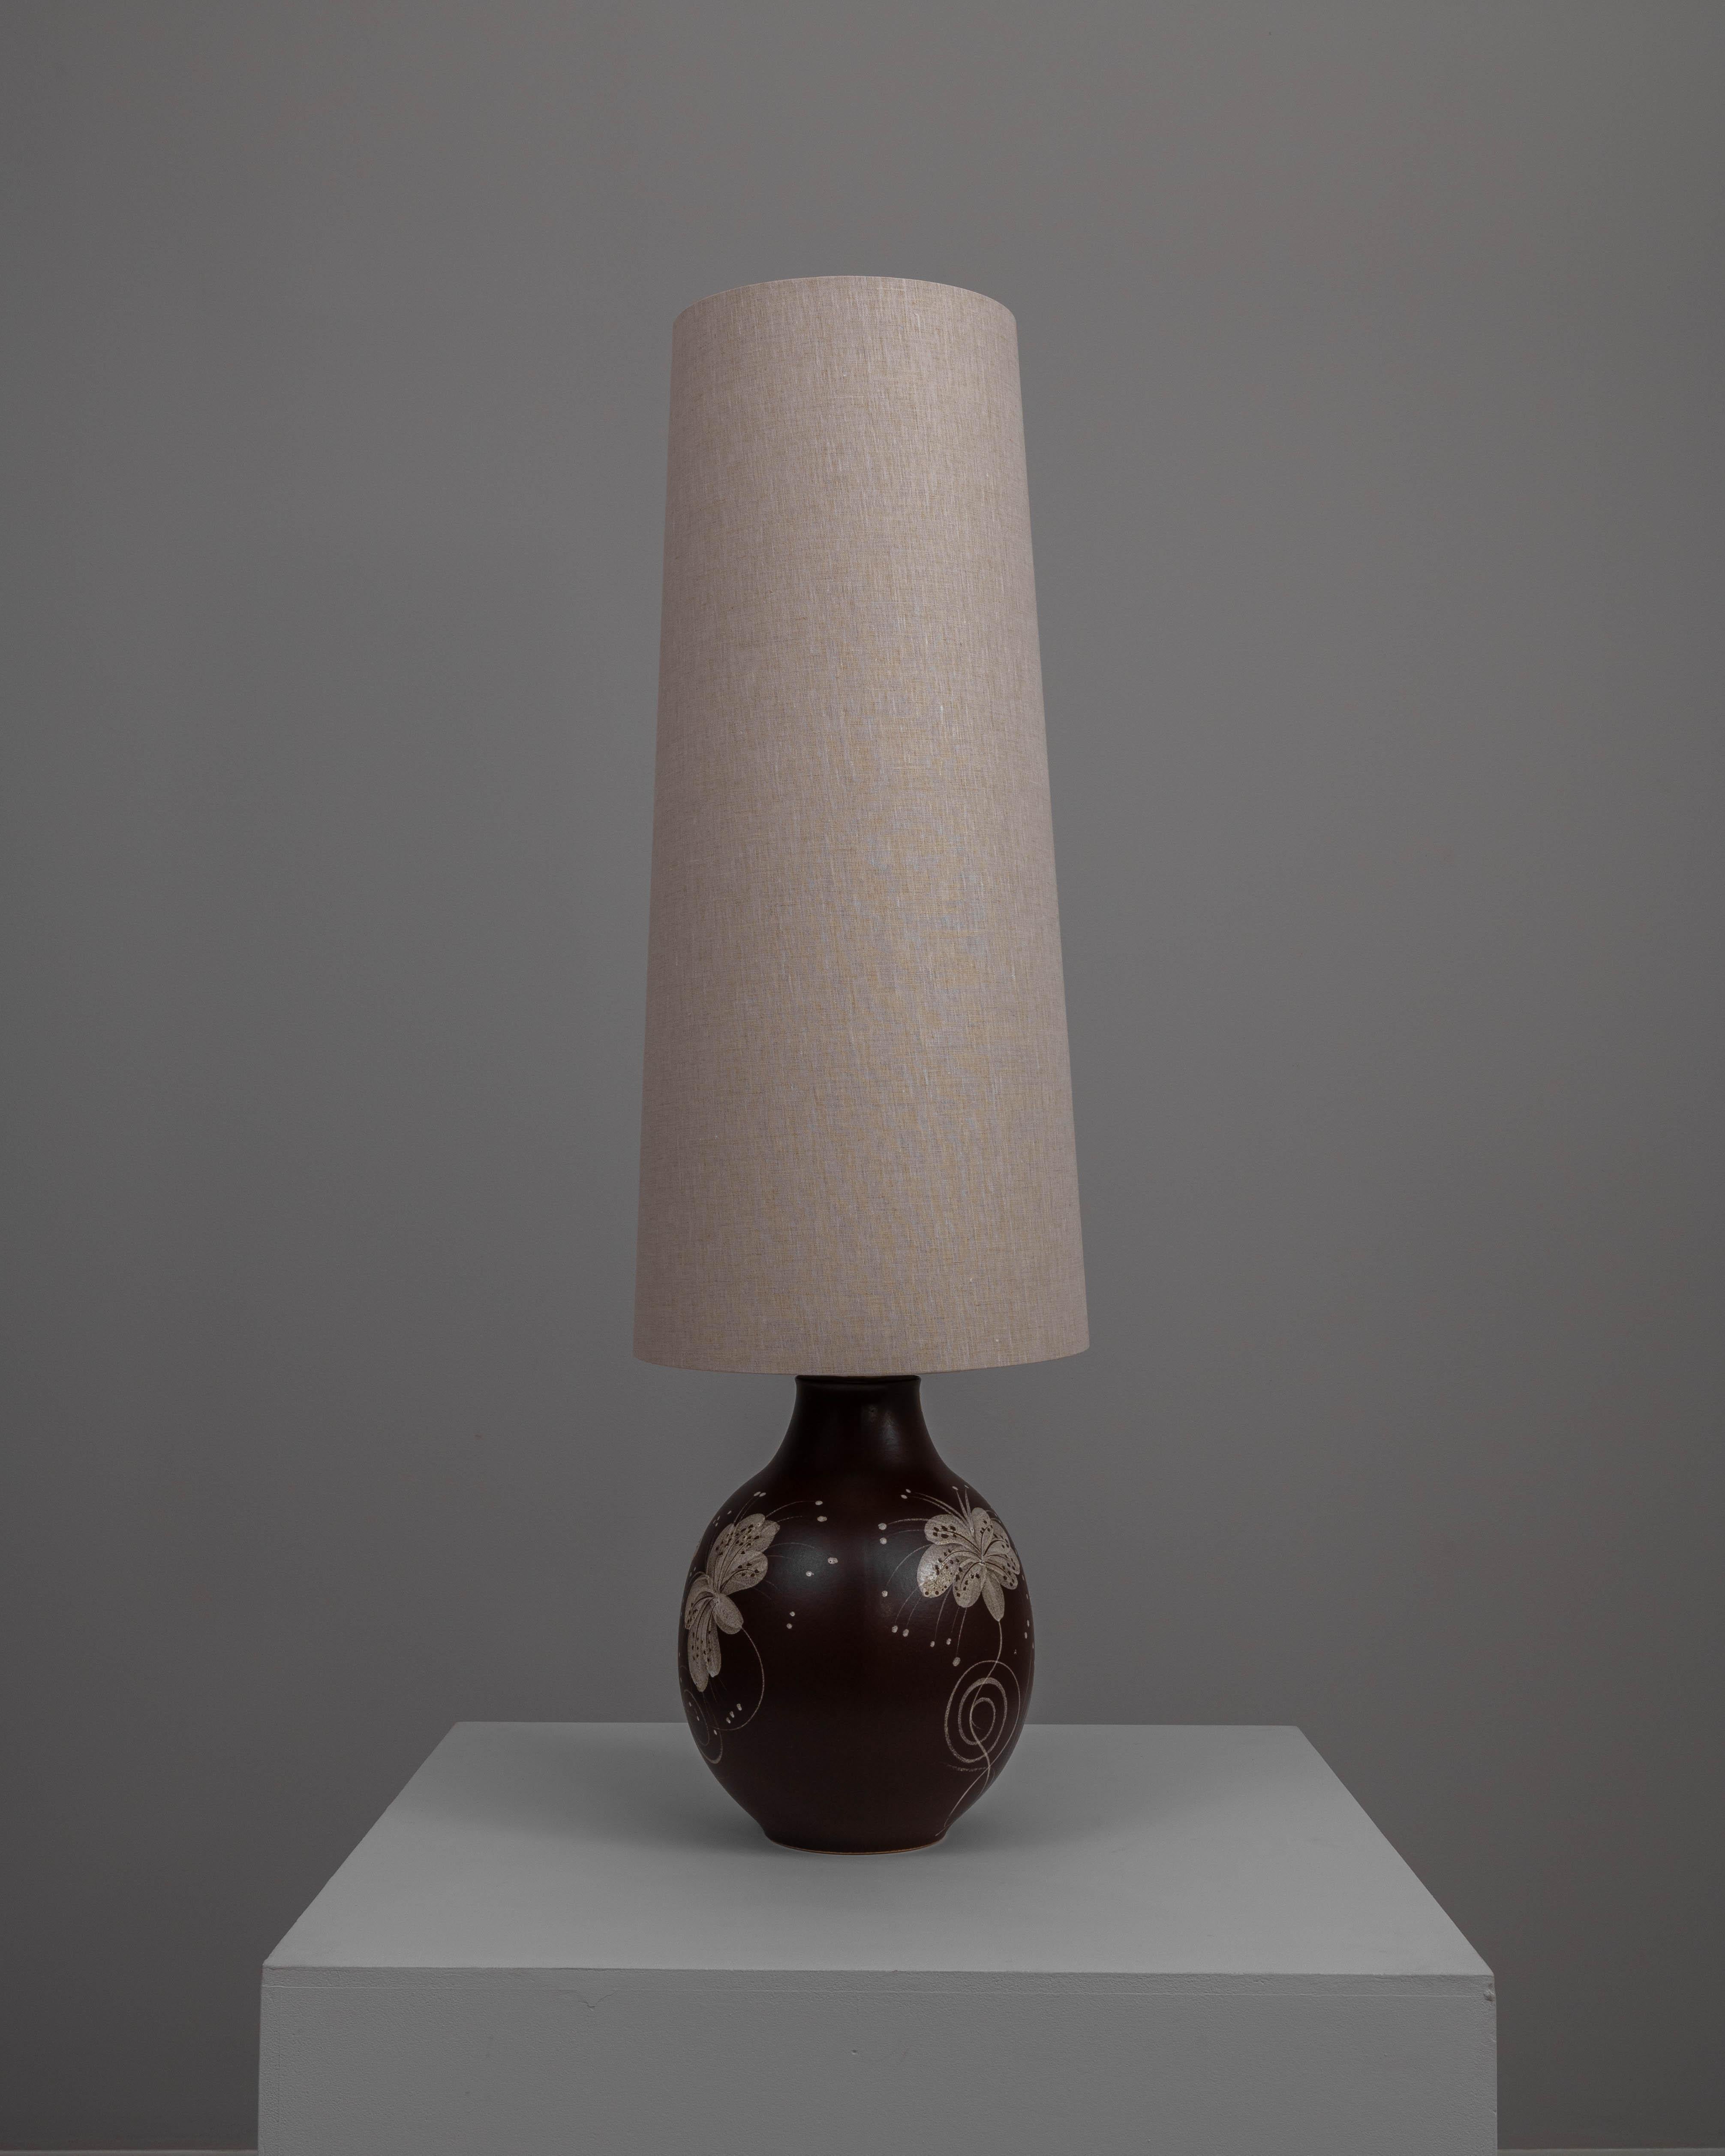 Cette lampe de table en céramique allemande du XXe siècle est un exemple exquis d'art fonctionnel. La base en céramique, riche d'une teinte brune profonde, est ornée de délicats motifs floraux blancs qui ajoutent une touche d'élégance et d'intérêt